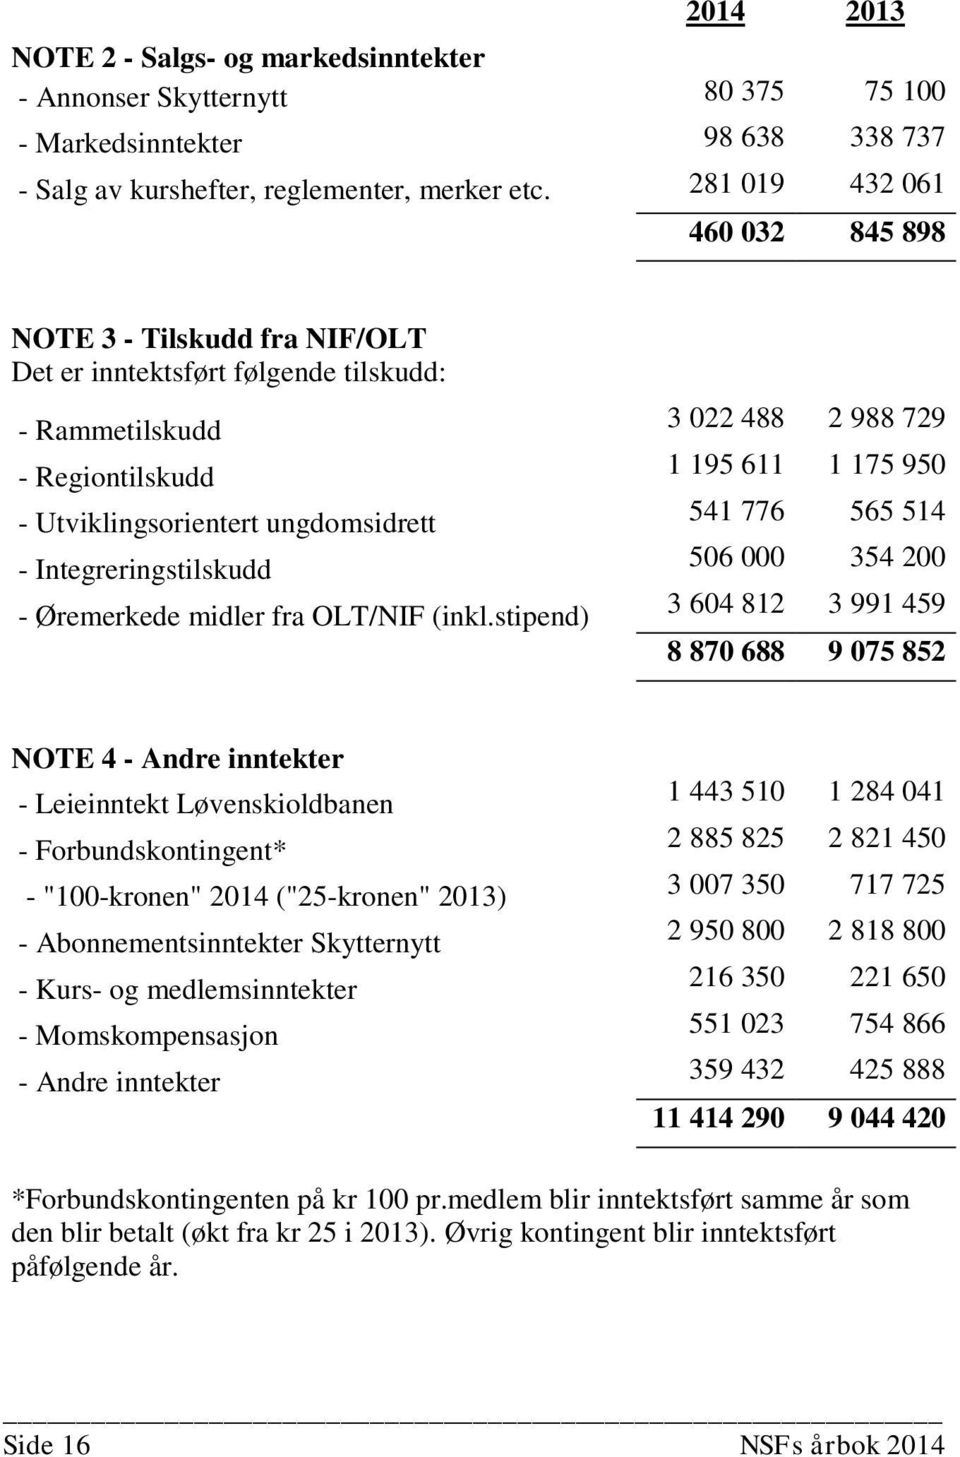 Øremerkede midler fra OLT/NIF (inkl.